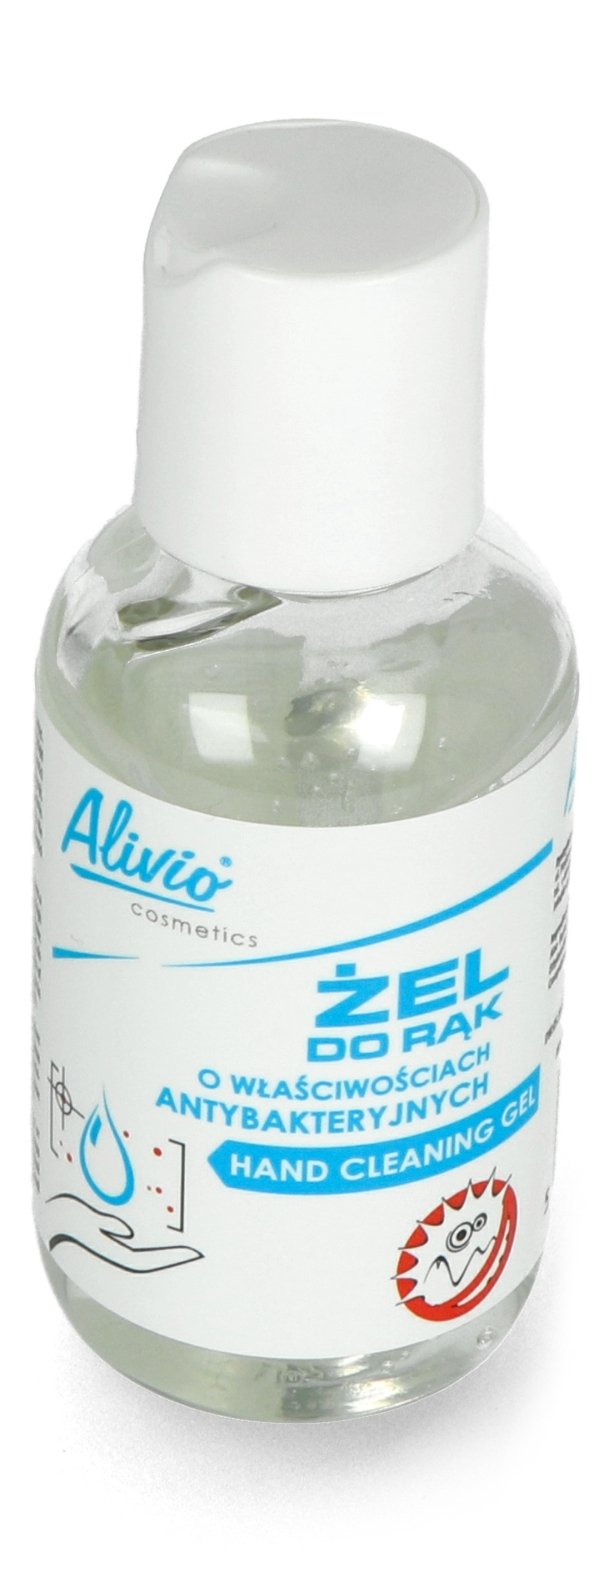 Antibakteriální gel na ruce o objemu 50 ml.